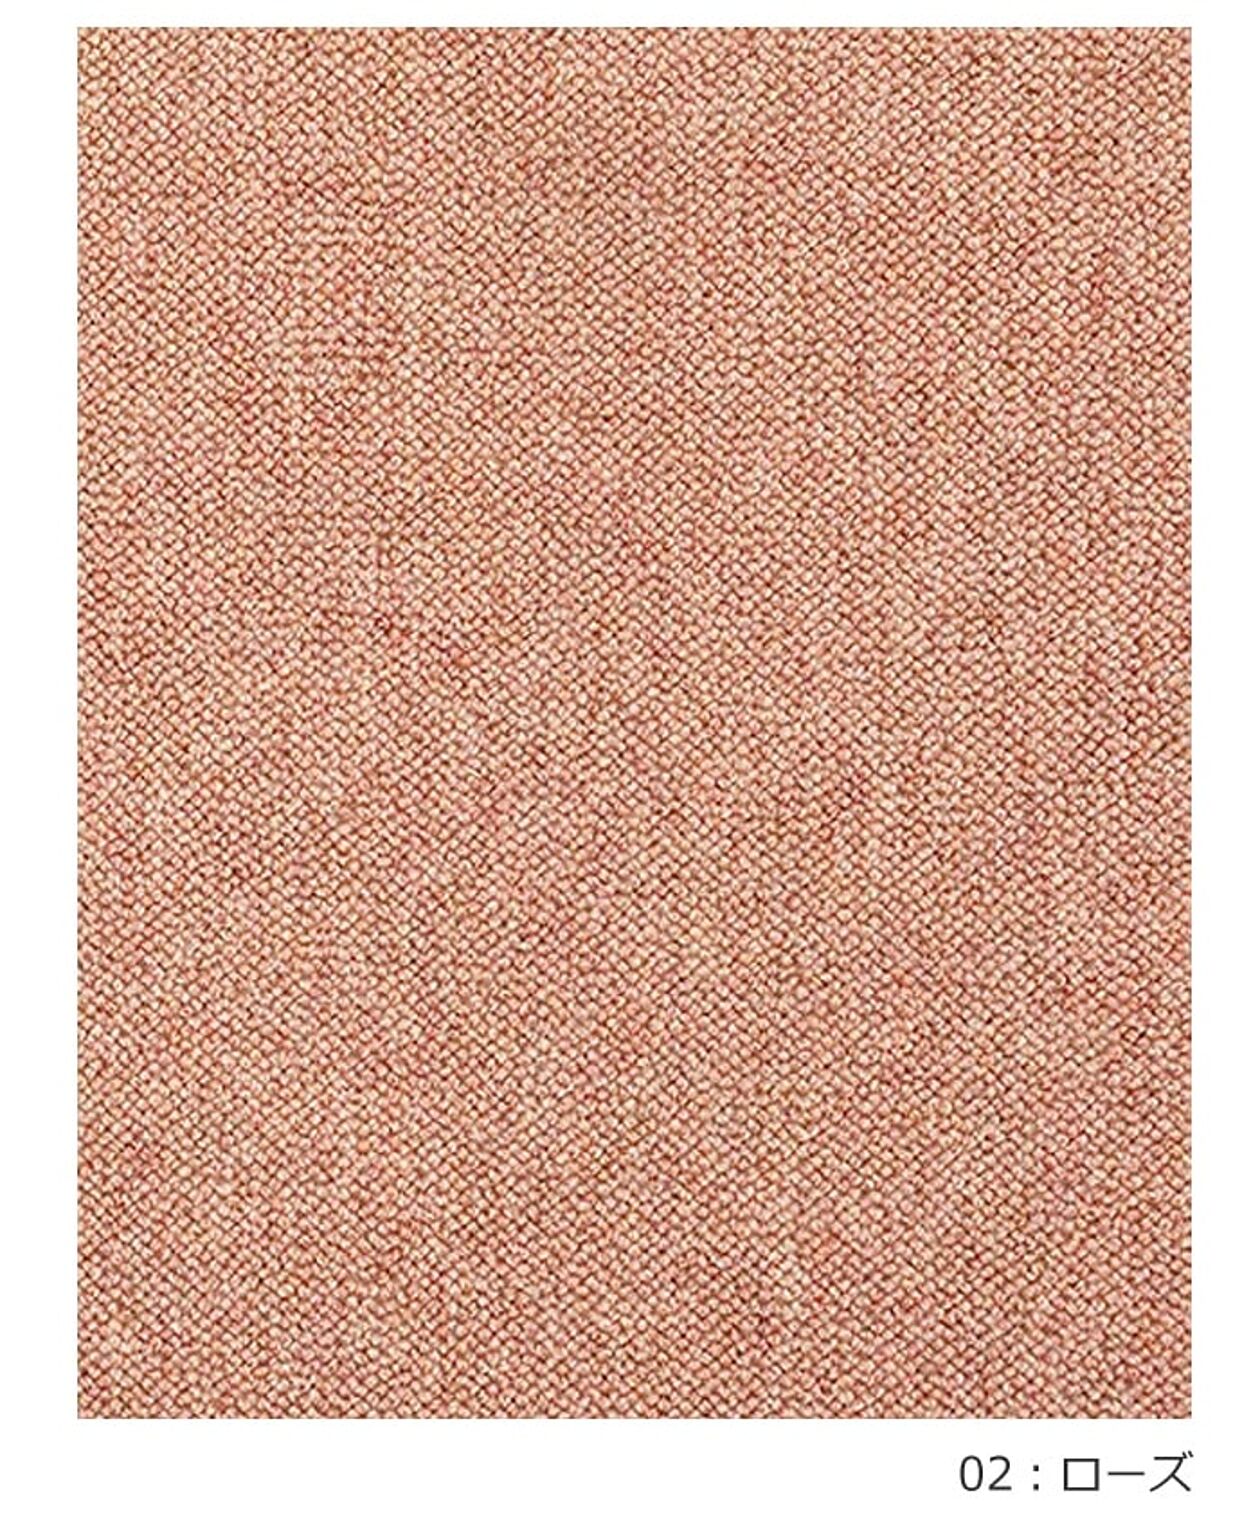 ラグ ラグマット 絨毯 日本製 防炎 防音 ウール100% カーペット prevell プレーベル リンクス 江戸間8畳 約352×352cm 無地 北欧 デザイン おしゃれな 引っ越し 新生活